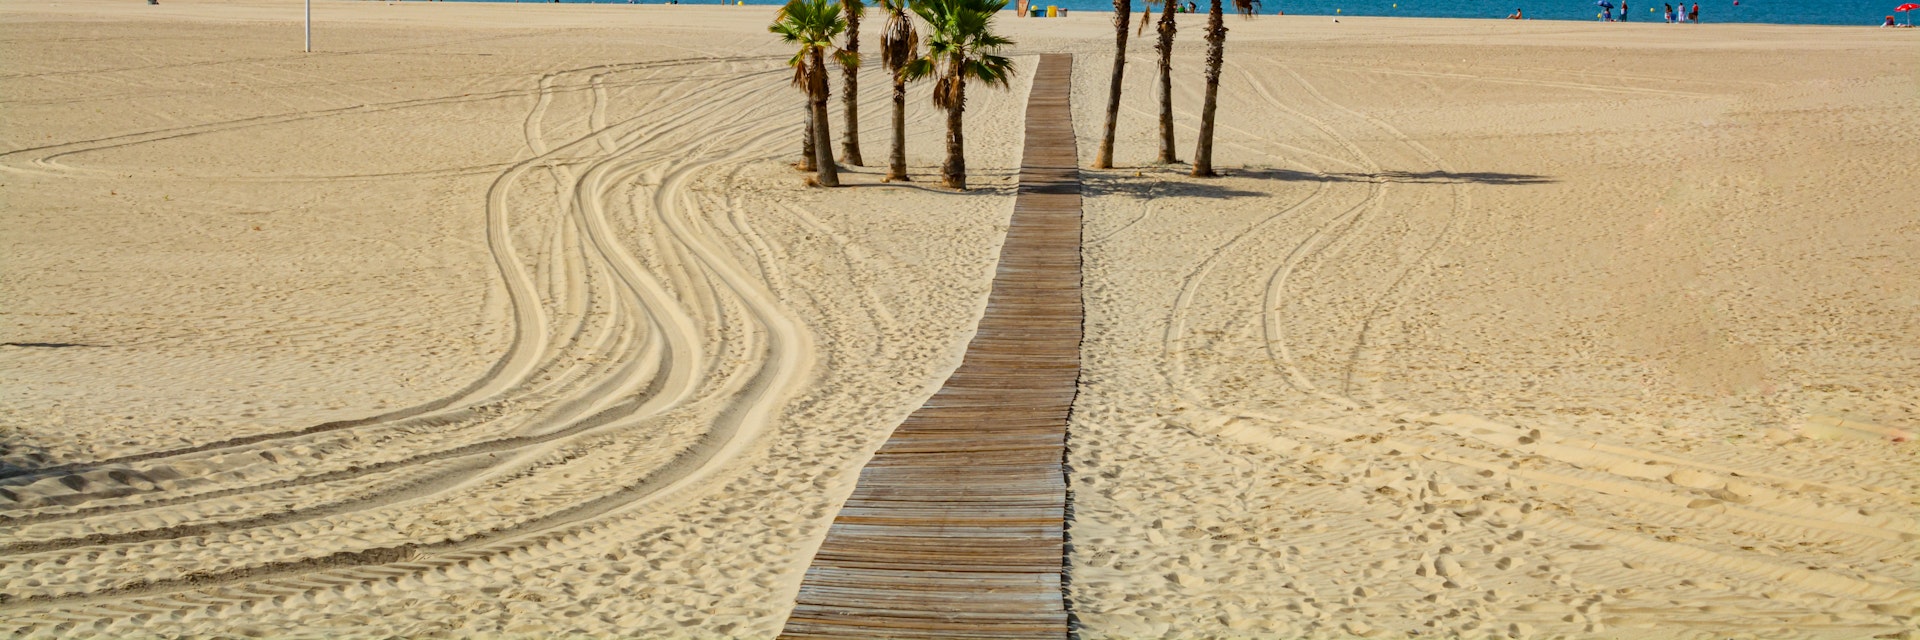 Beautiful local sandy beach with palm trees Playa de la Puntilla on Atlantic ocean in El Puerto de Santa-Maria, Andalusia, Spain